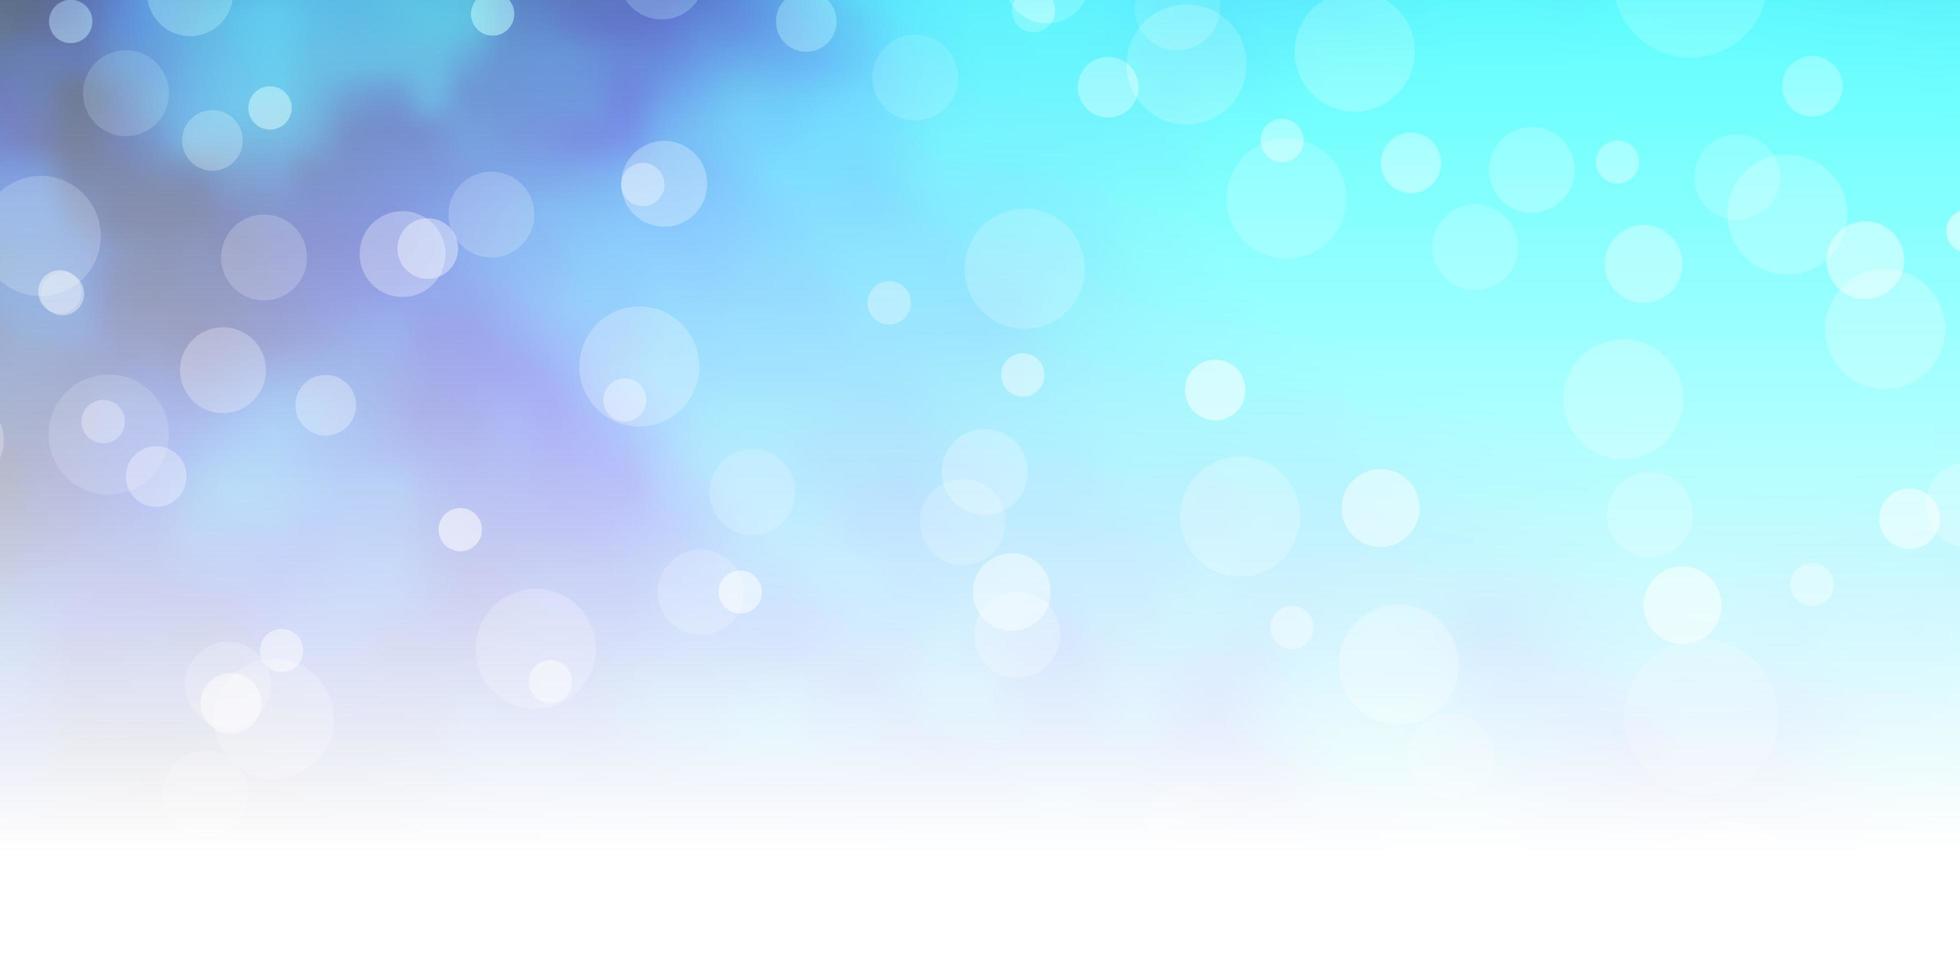 sfondo vettoriale blu scuro con cerchi disegno decorativo astratto in stile sfumato con design a bolle per i tuoi annunci pubblicitari